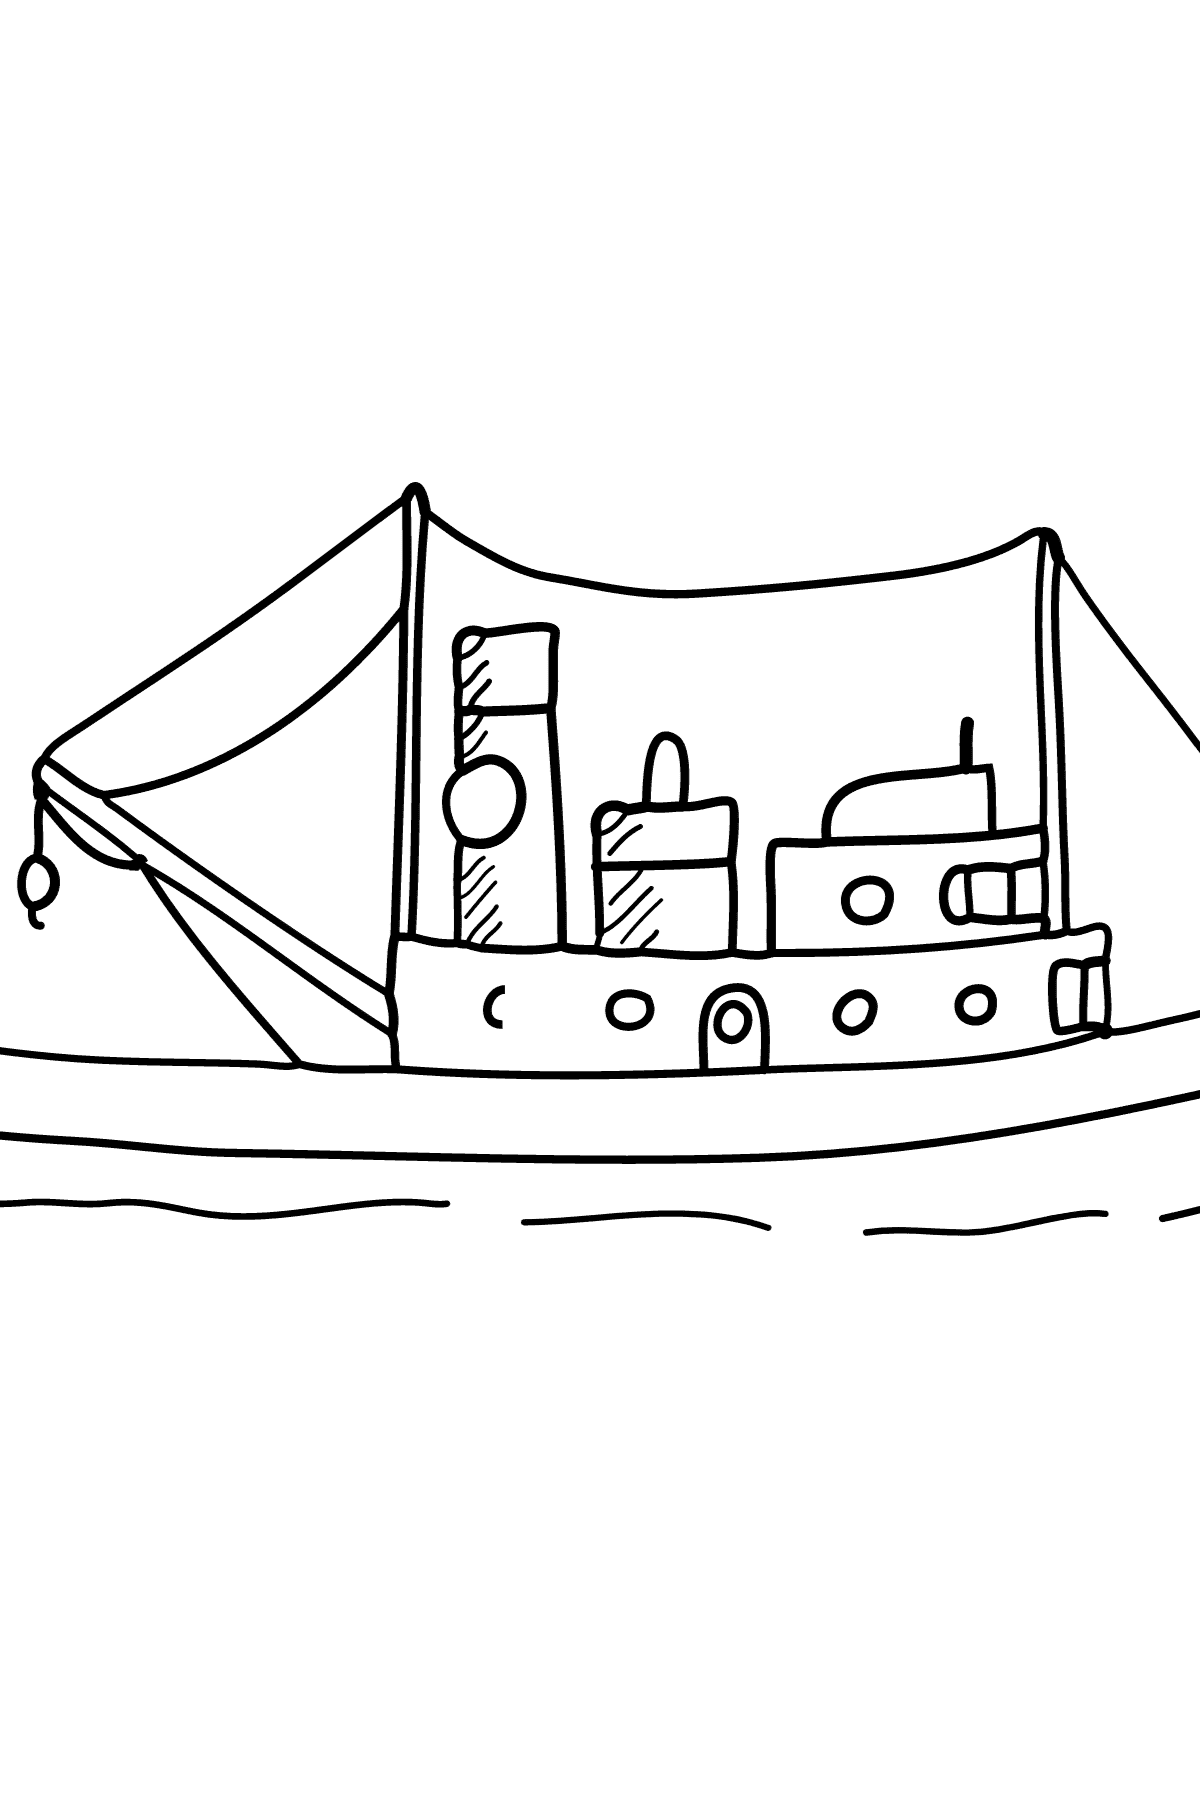 Ausmalbild- Ein Frachtschiff - Ausmalbild für Kinder